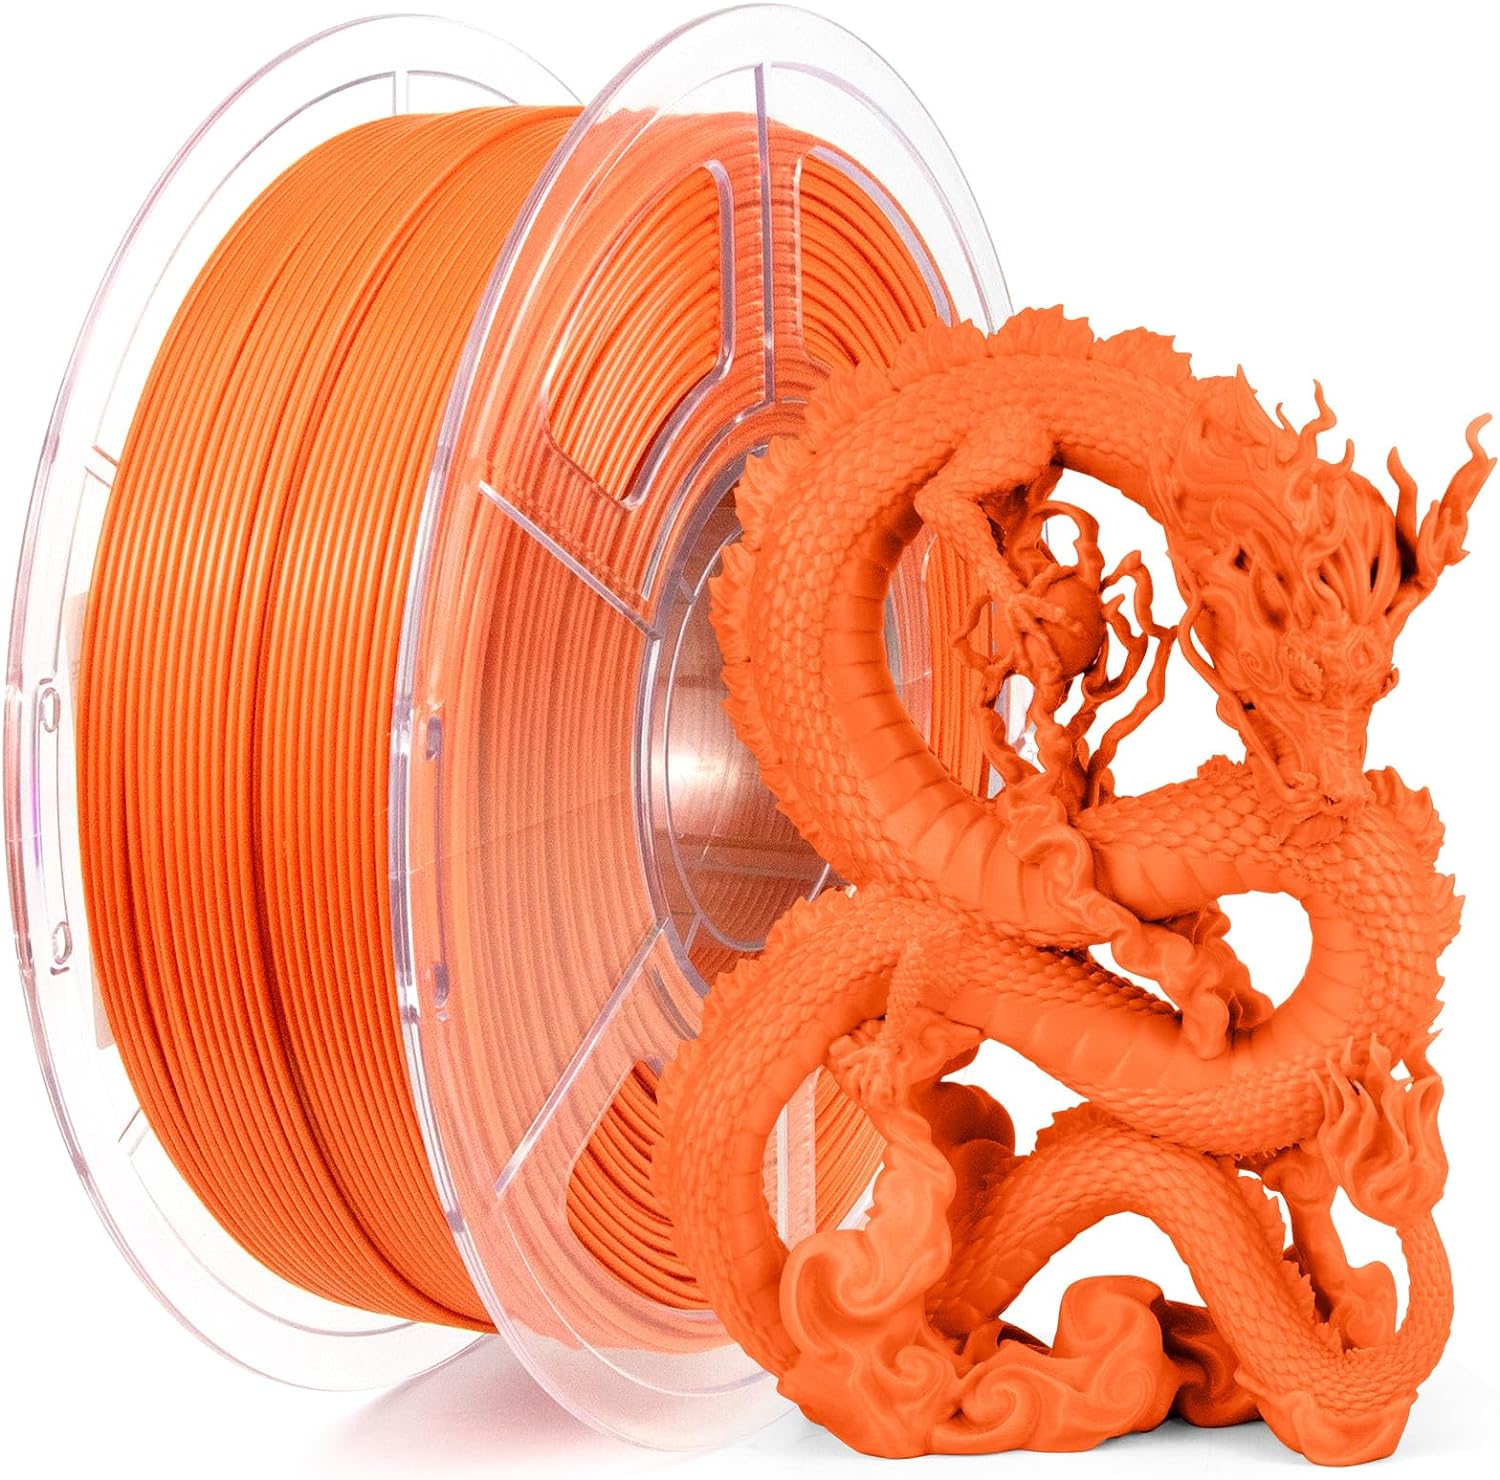 M5C 3D Printer + 6 kg of Filament